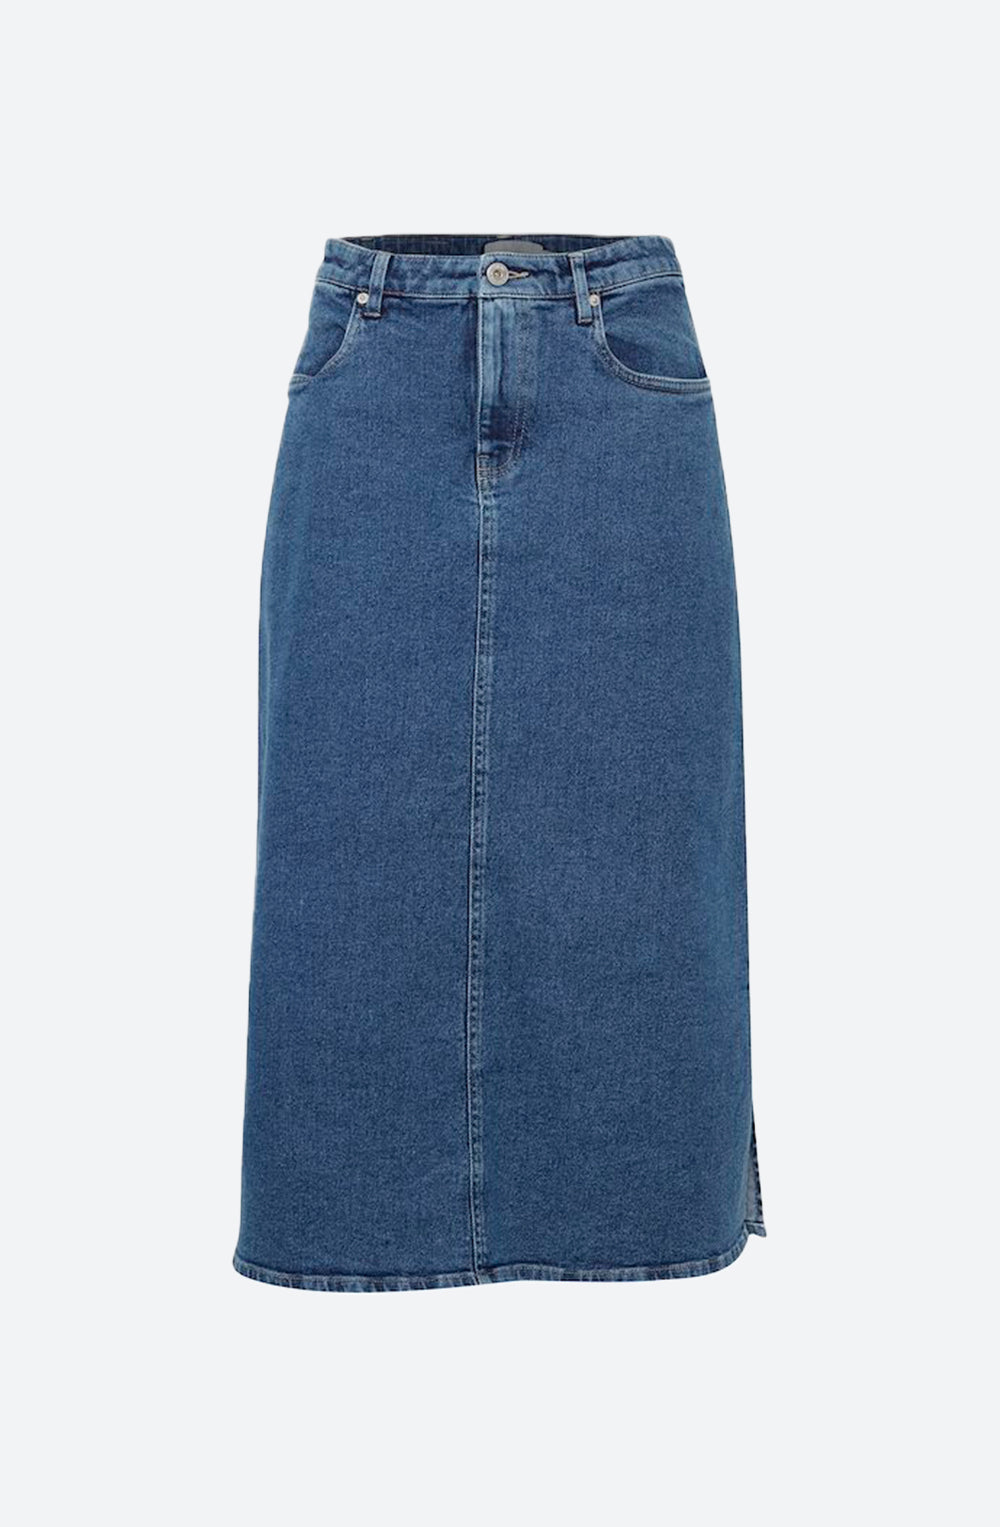 Coletta Denim Midi Skirt in Medium Blue